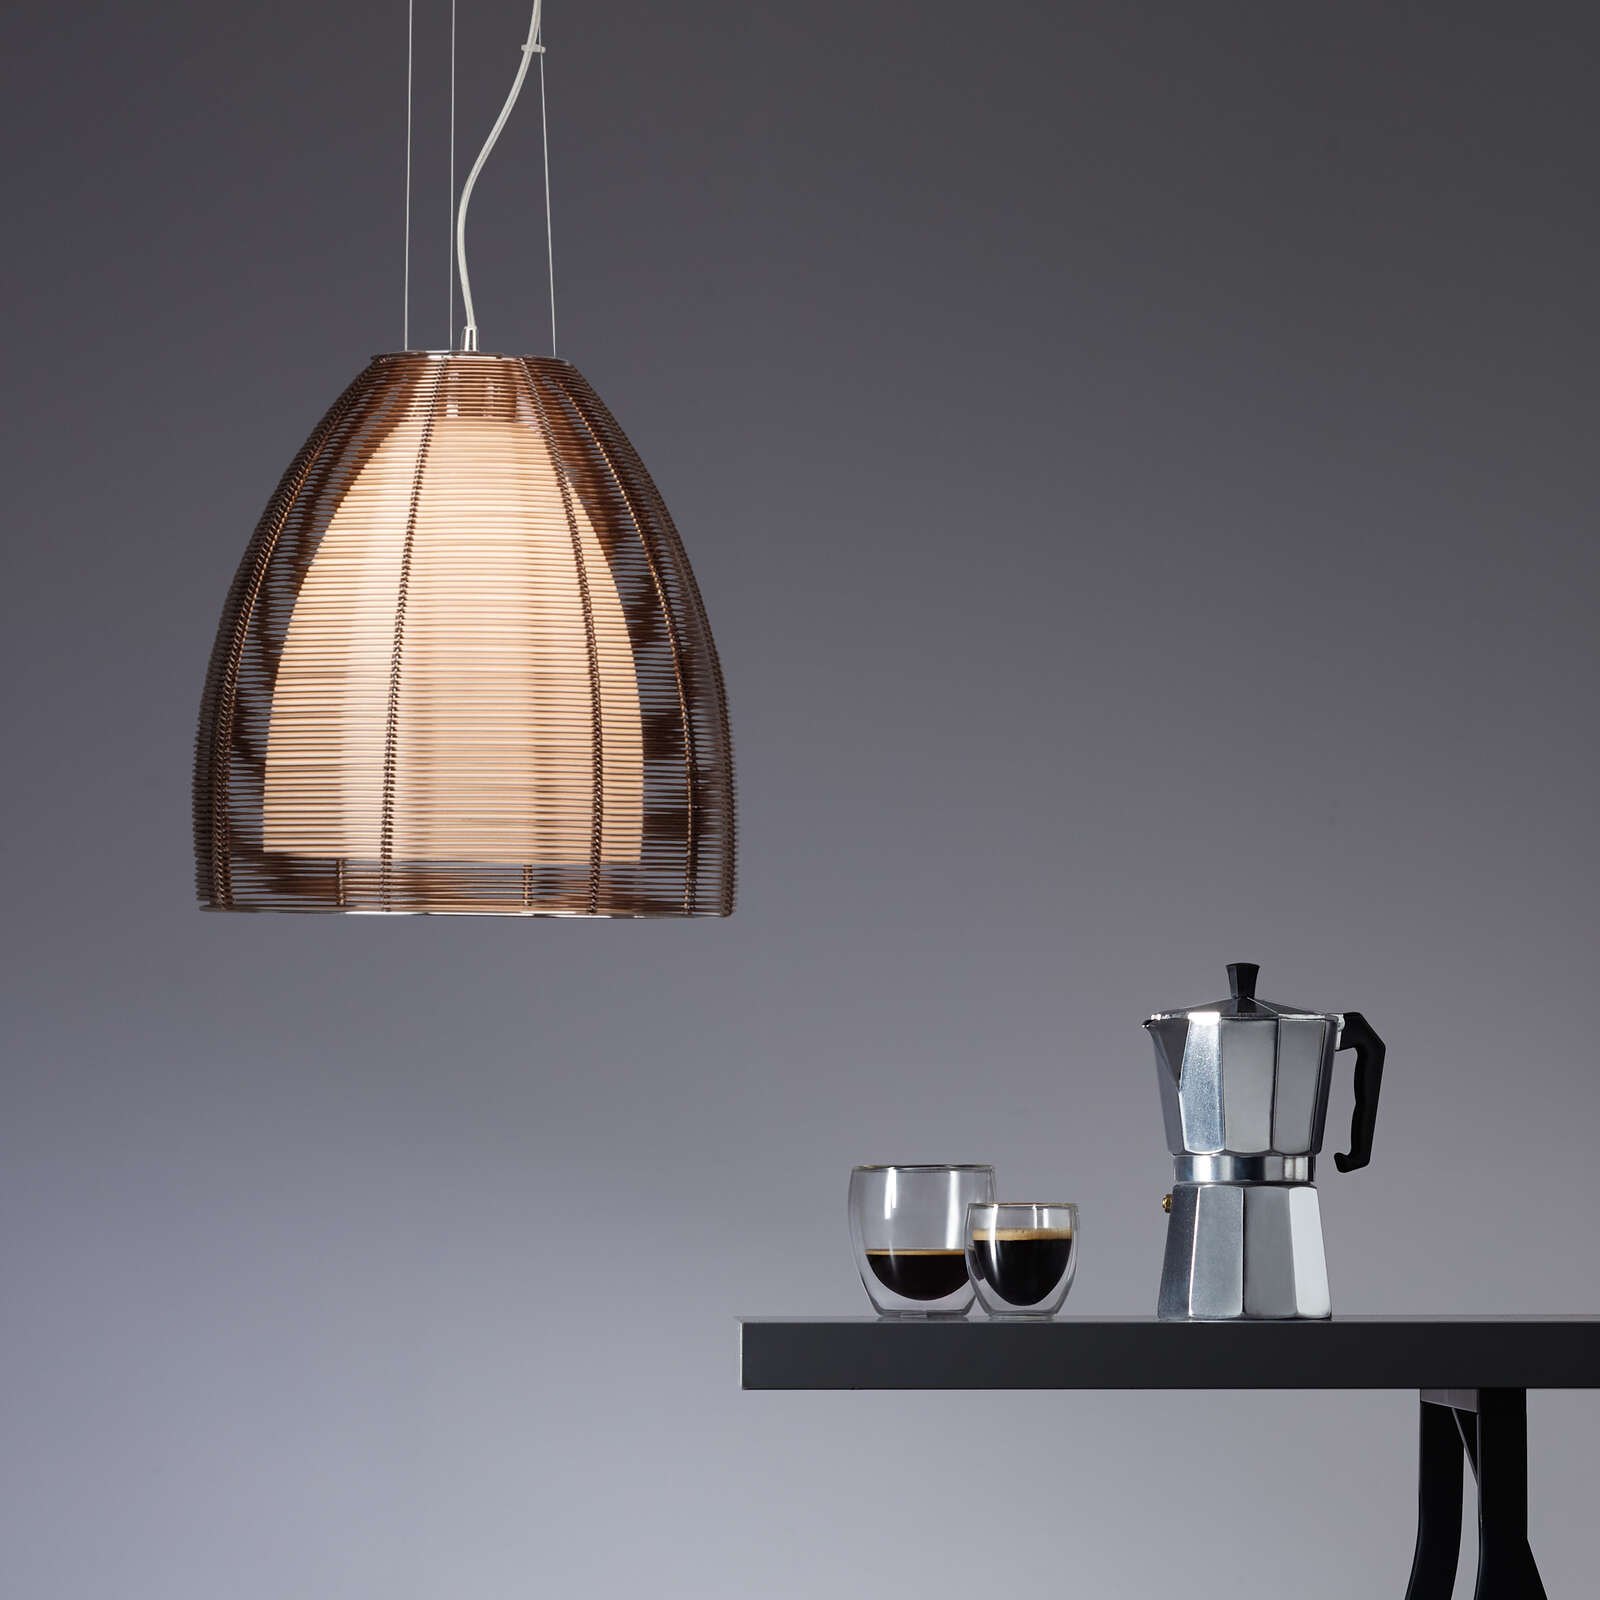             Glazen hanglamp - Maxime 5 - Bruin
        